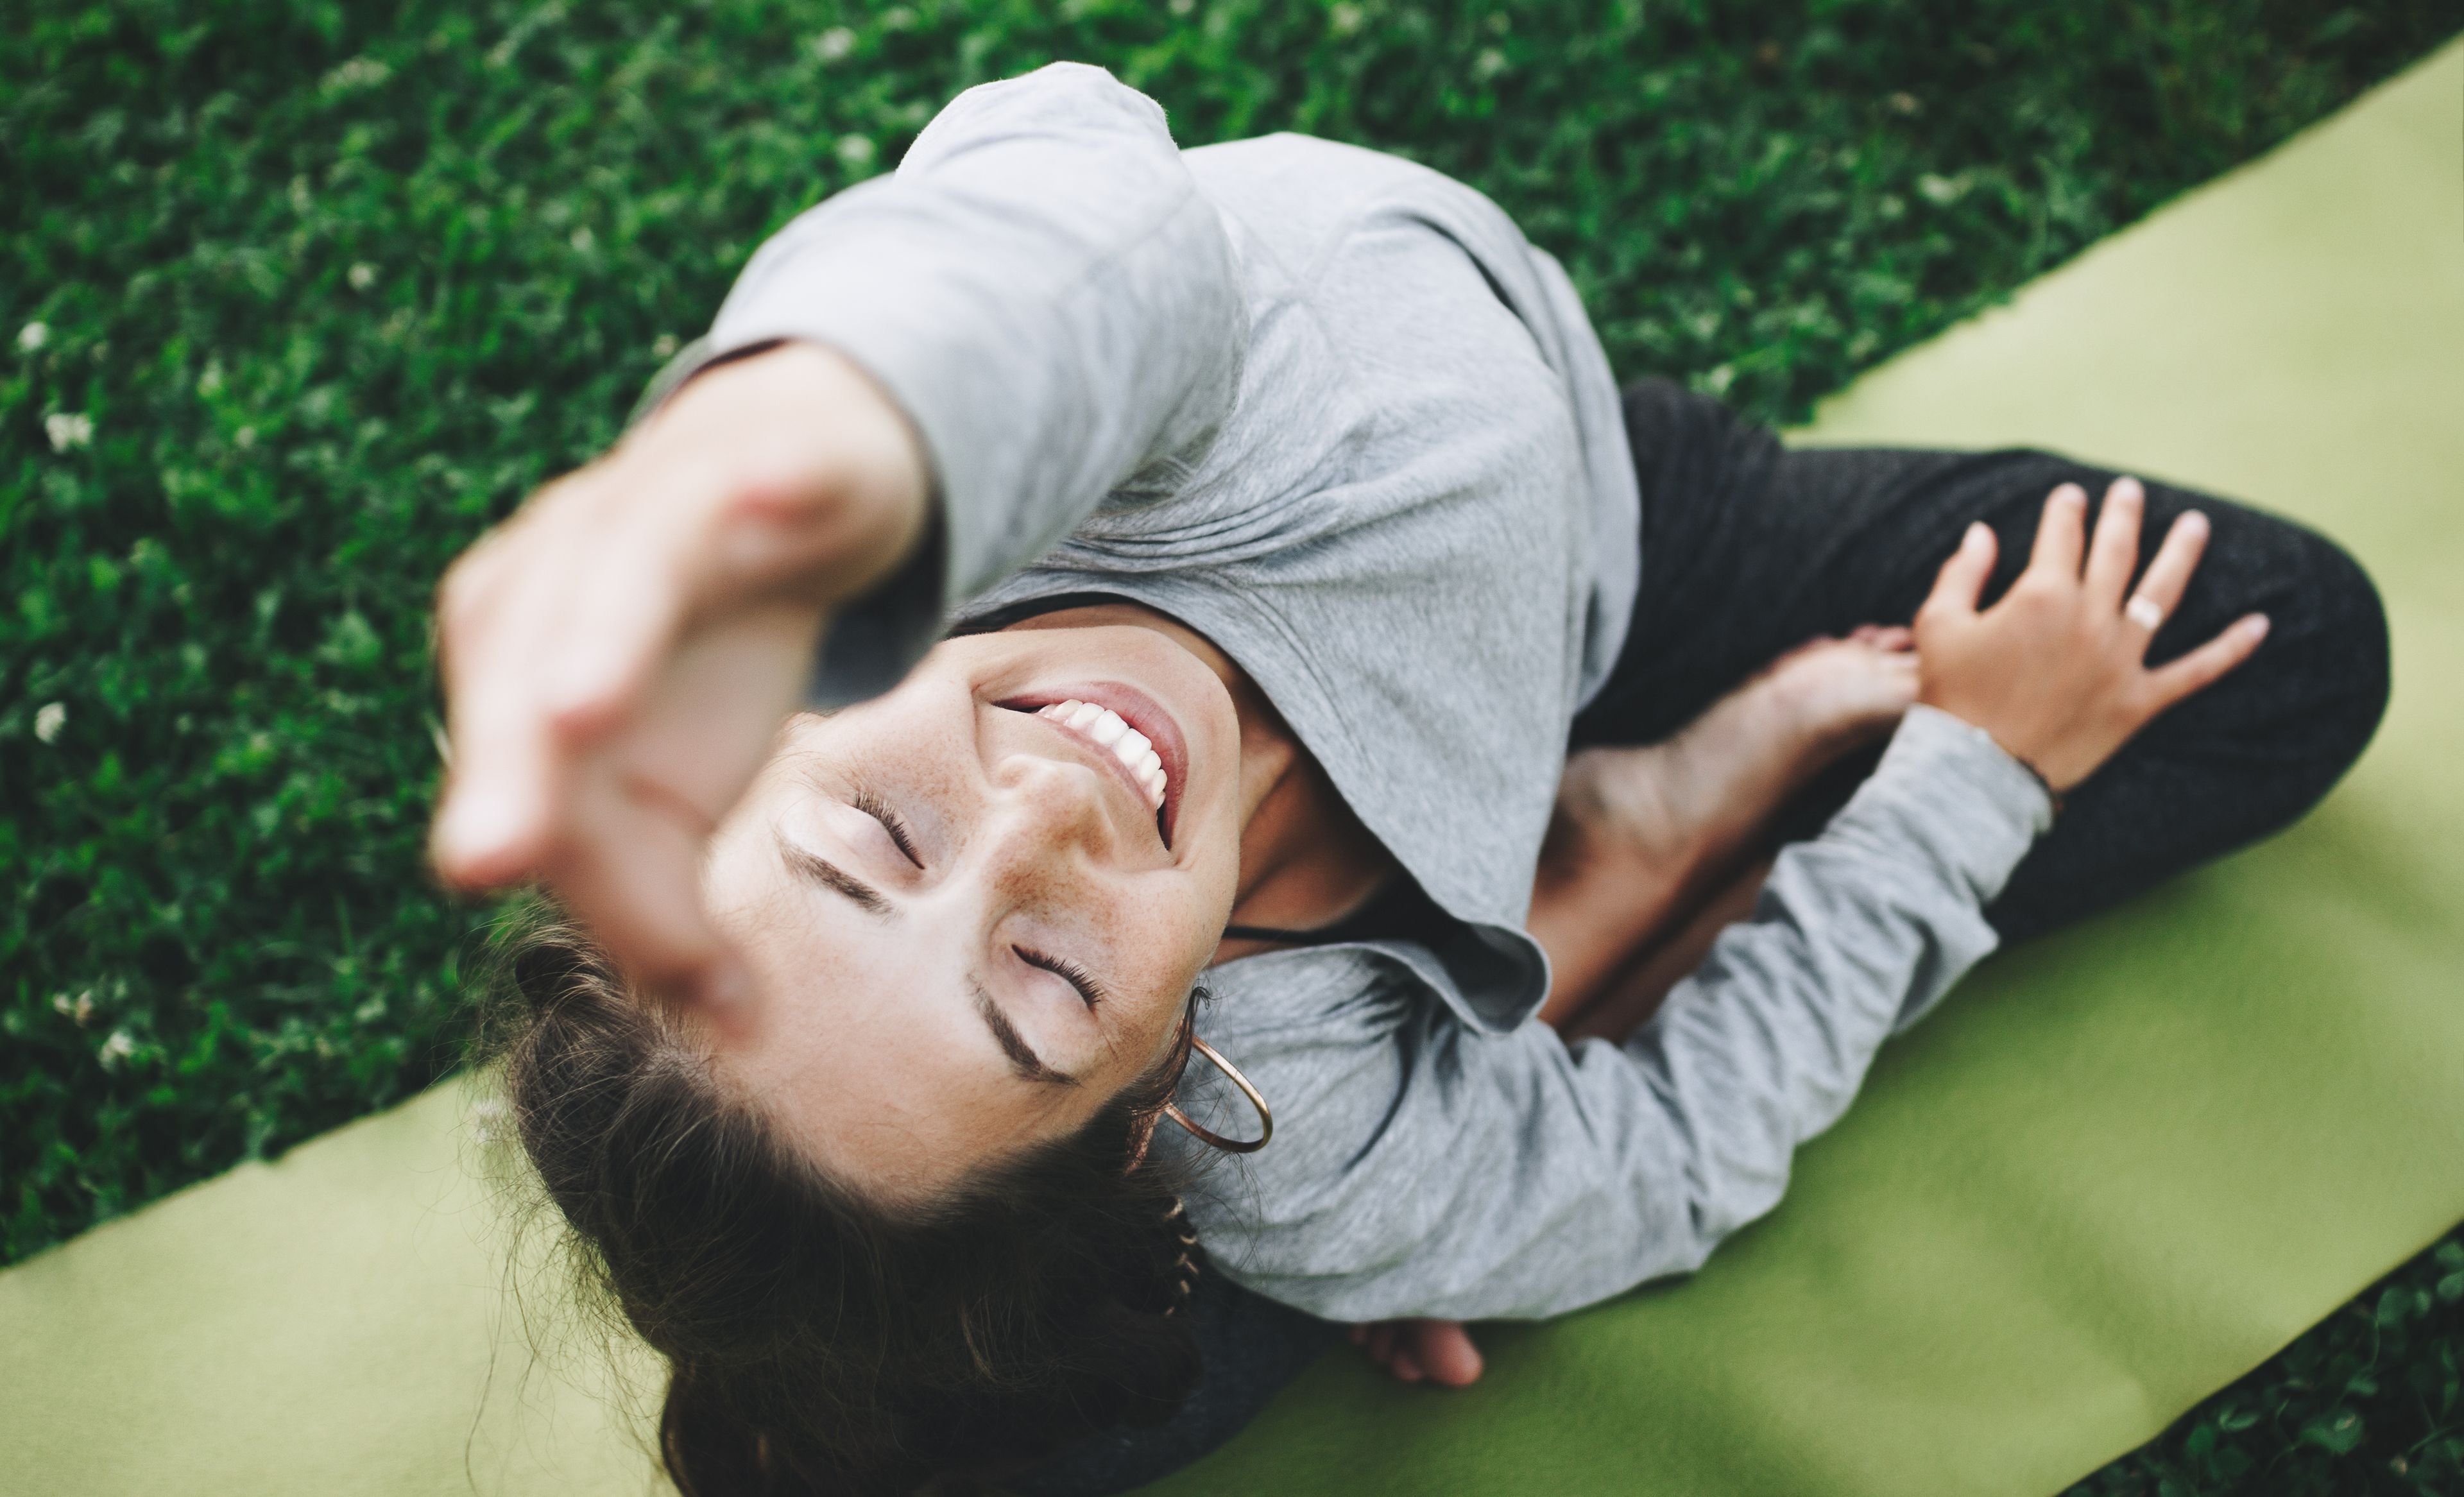 Frau auf Yogamatte sitzend, einen Arm in die Luft gestreckt, Blick nach oben